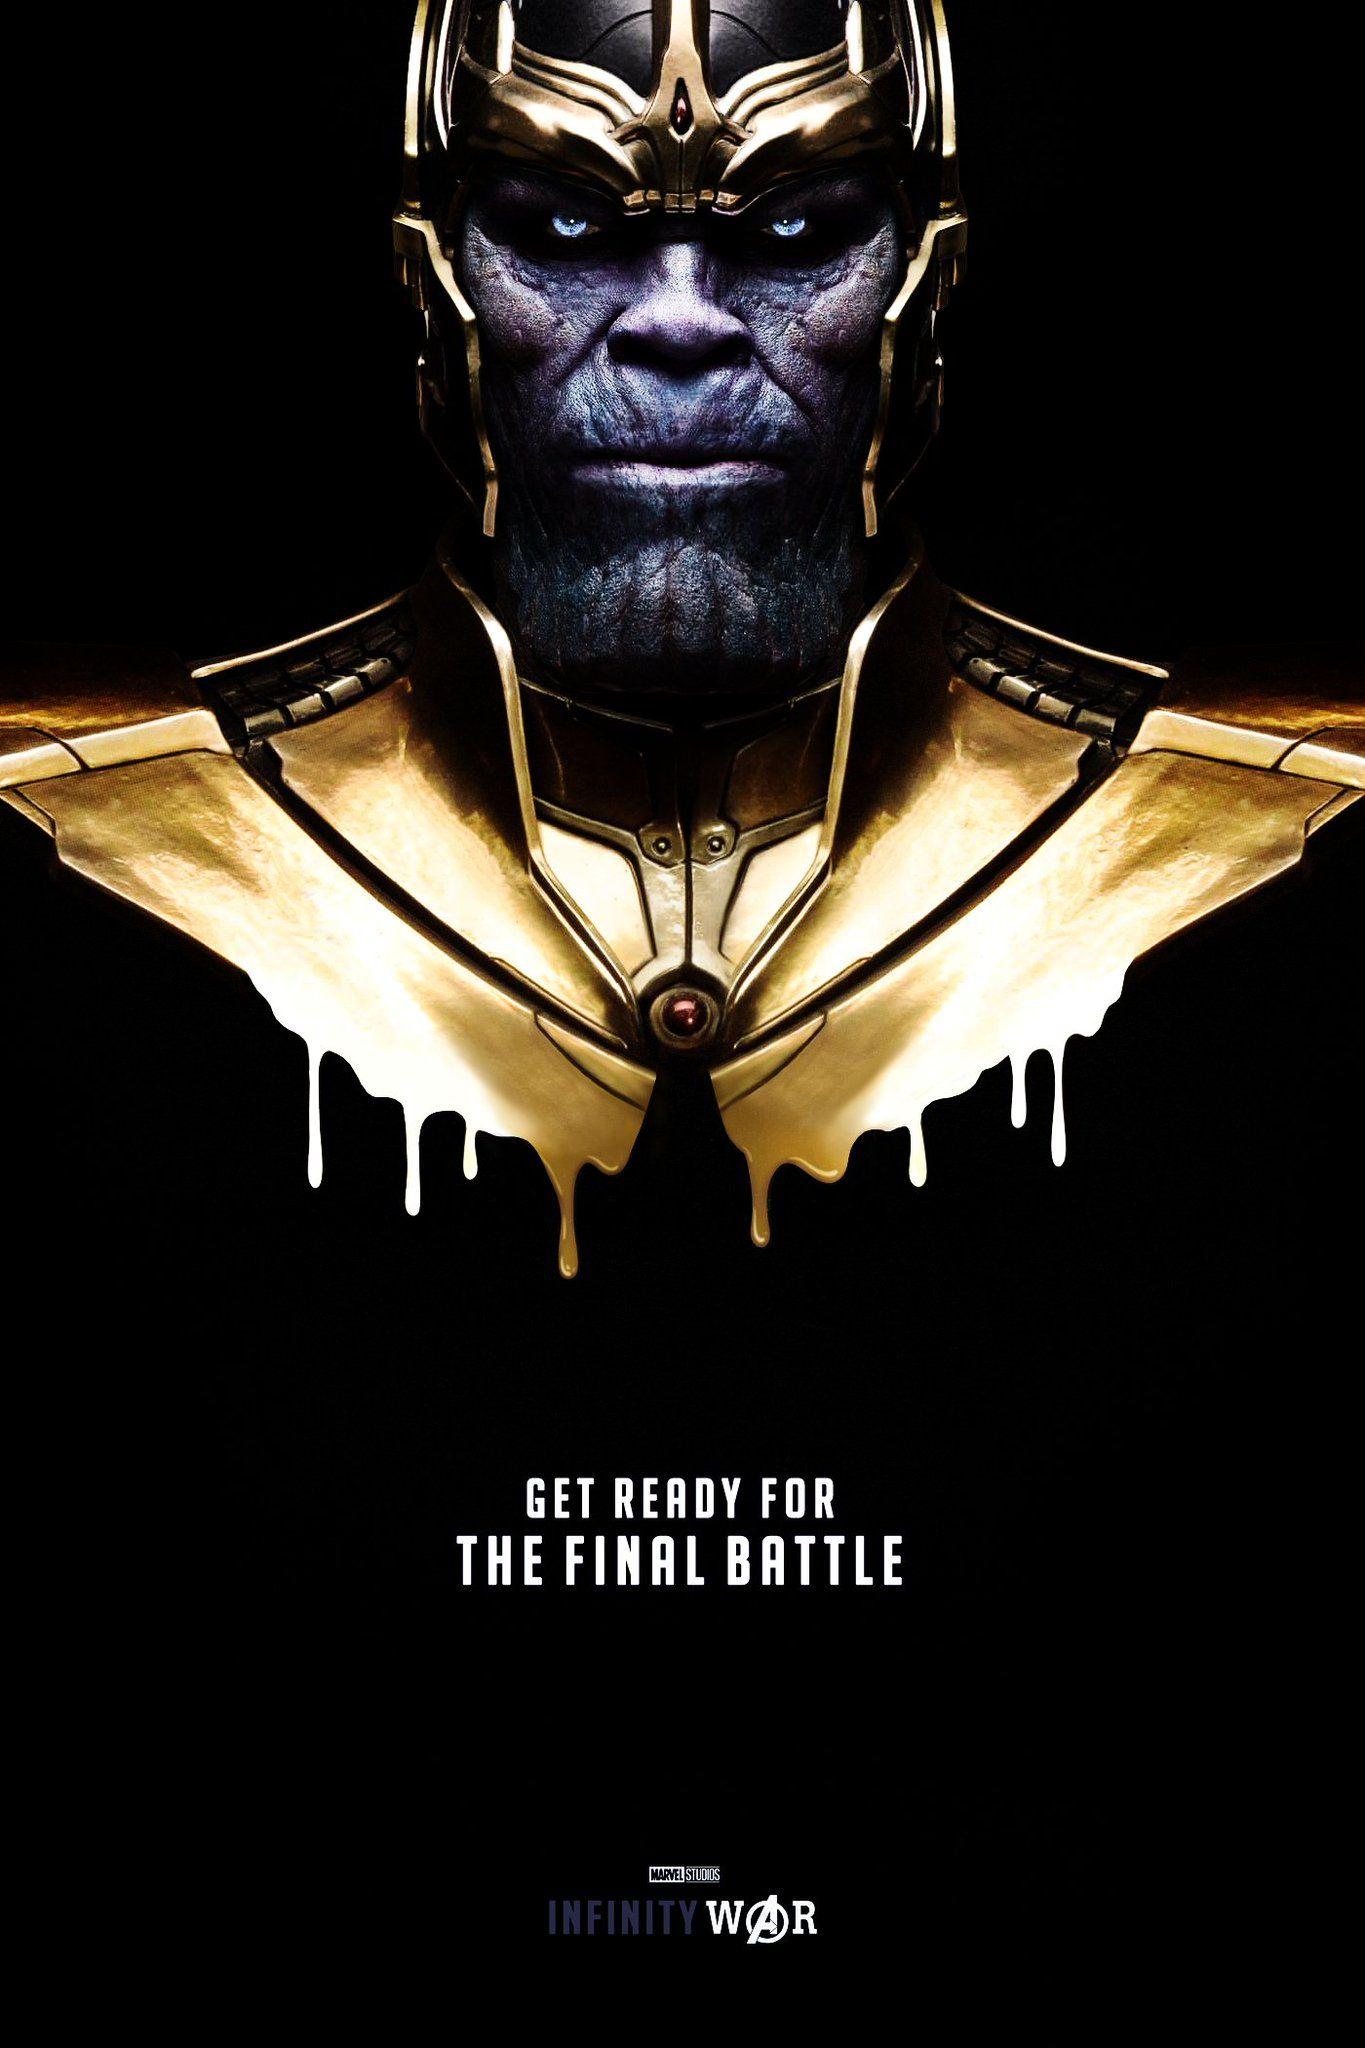 Avengers: Infinity War (2018) HD Wallpaper From Gallsource.com